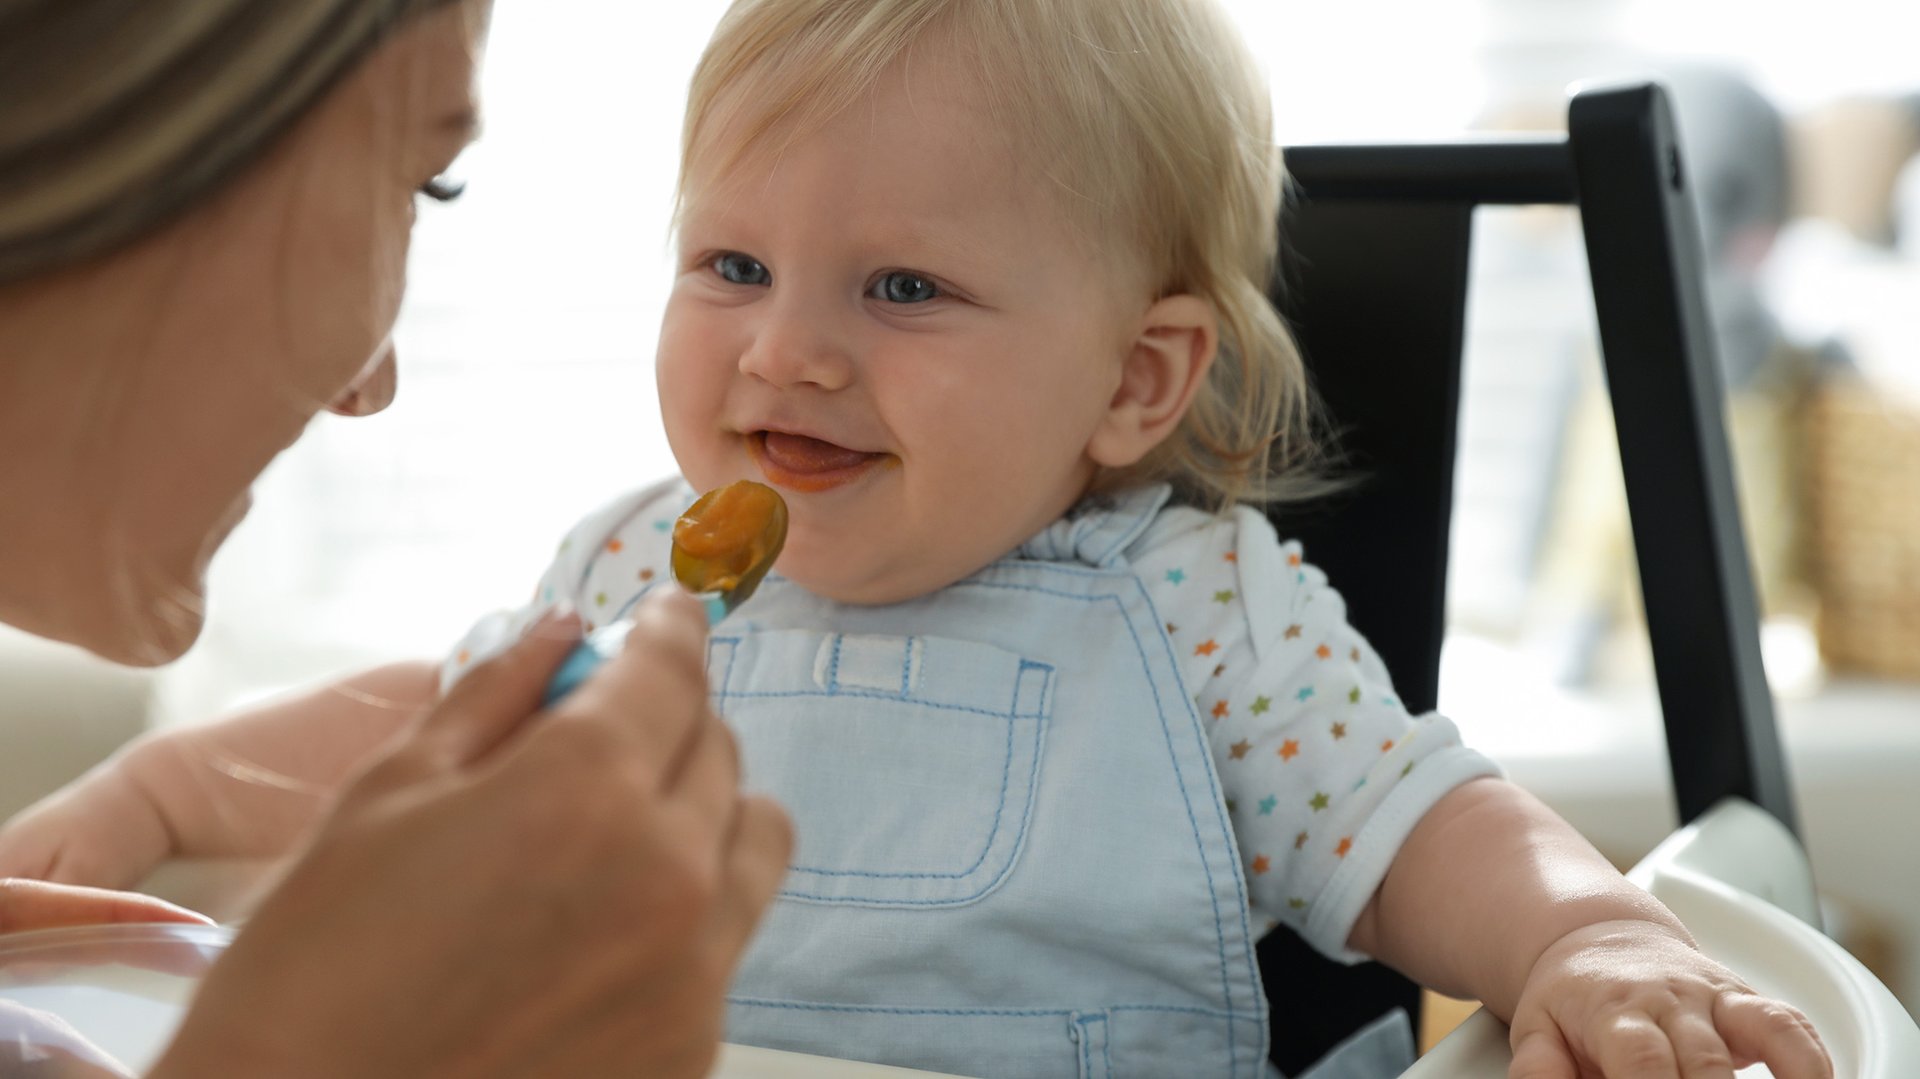 Dziecko usmiecha sie widzac zblizajaca sie lyzeczke z jedzeniem